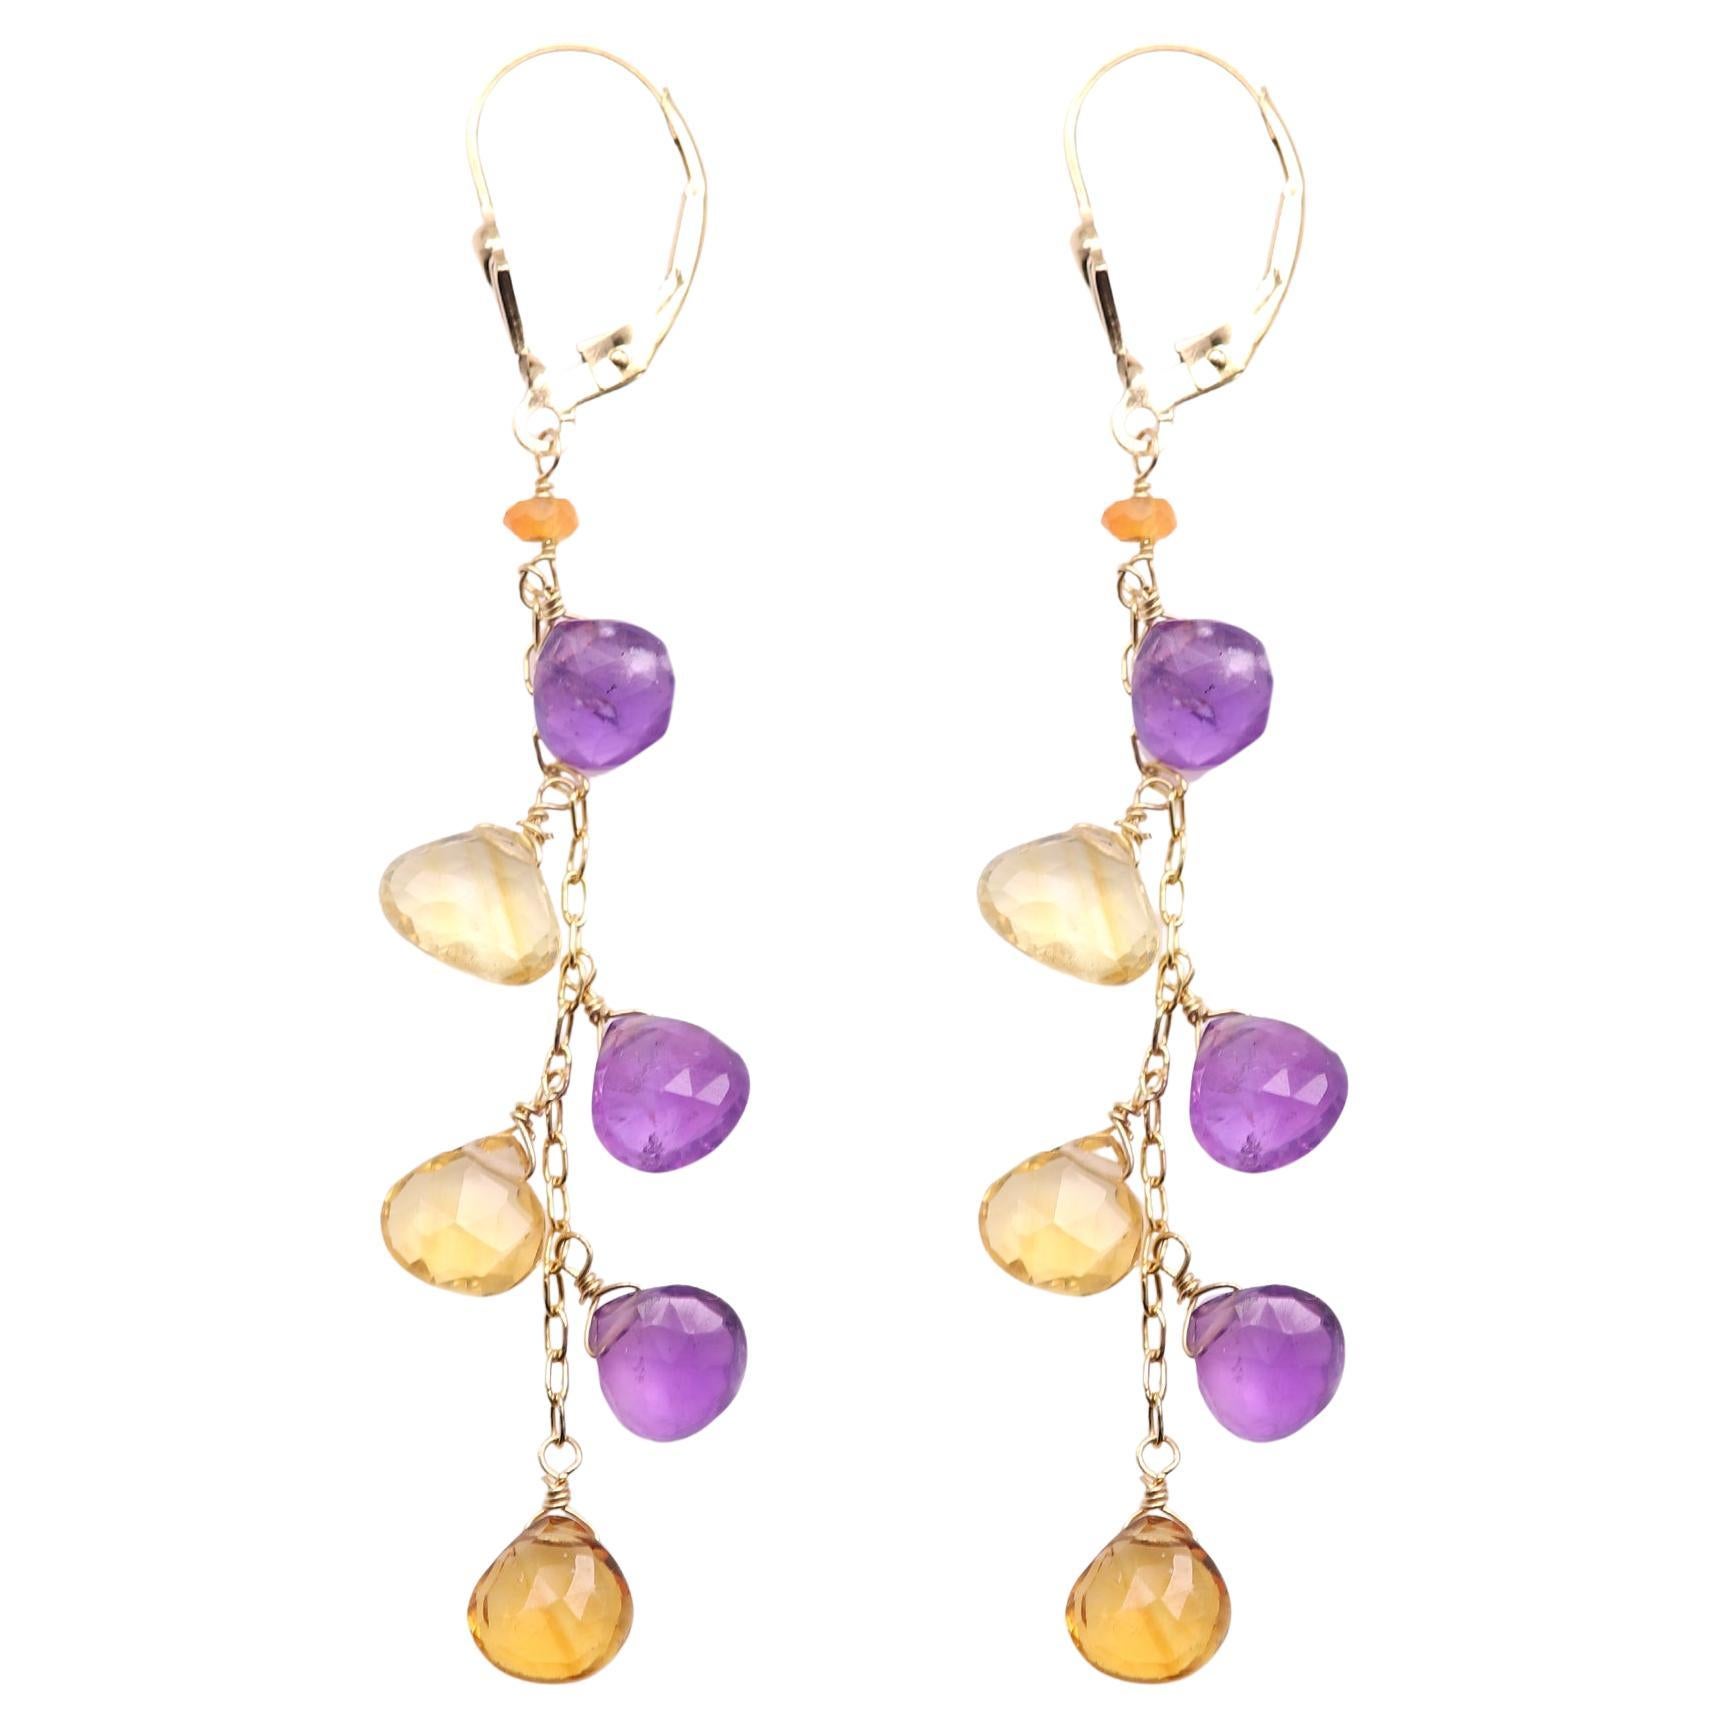 Boucles d'oreilles pendantes en or jaune 14 carats avec pierres semi-précieuses multicolores